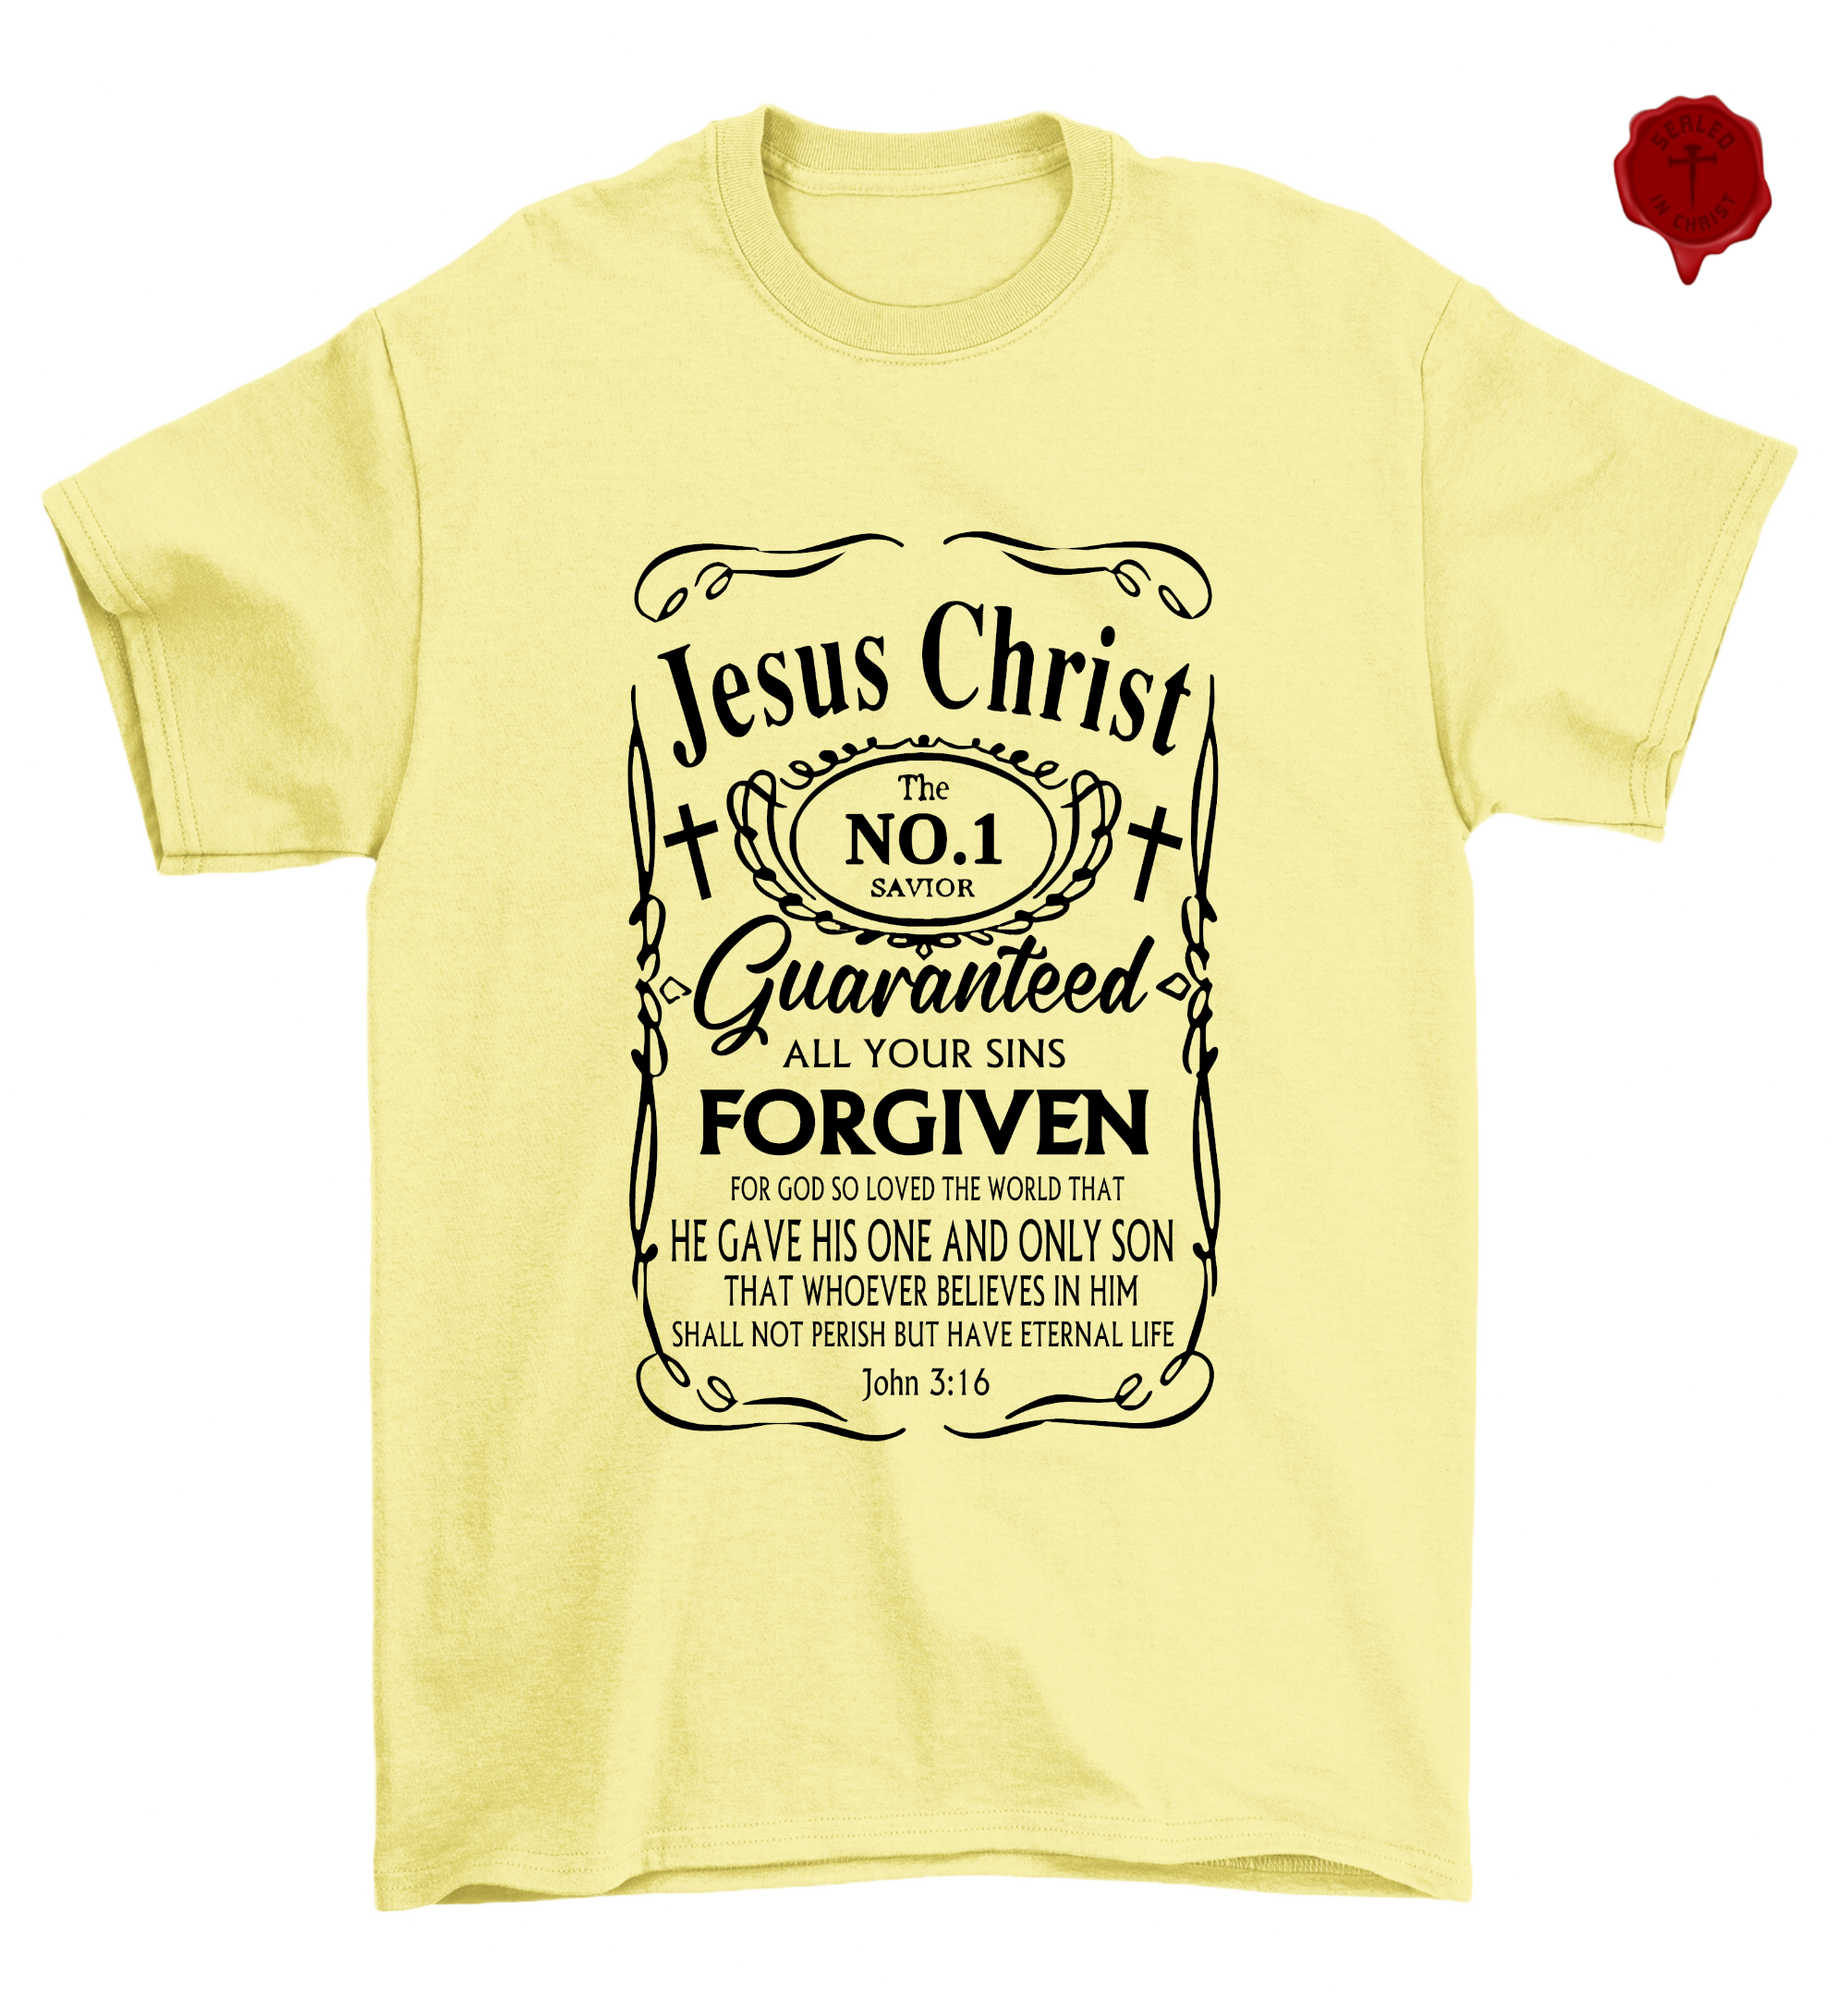 Jesus Christ #1 Savior